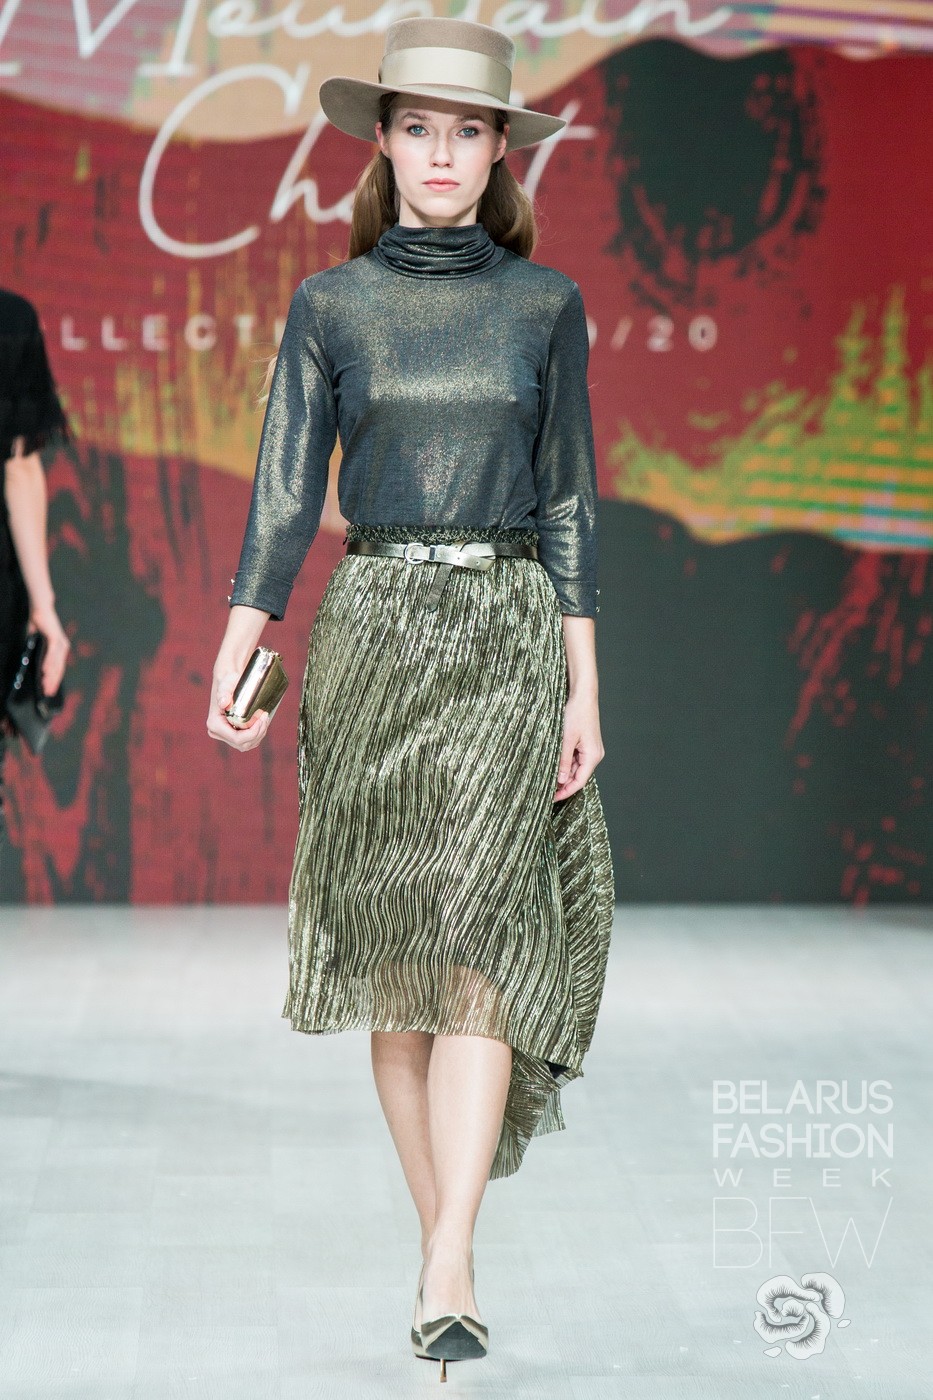 Nelva Belarus Fashion Week FW 2019-20